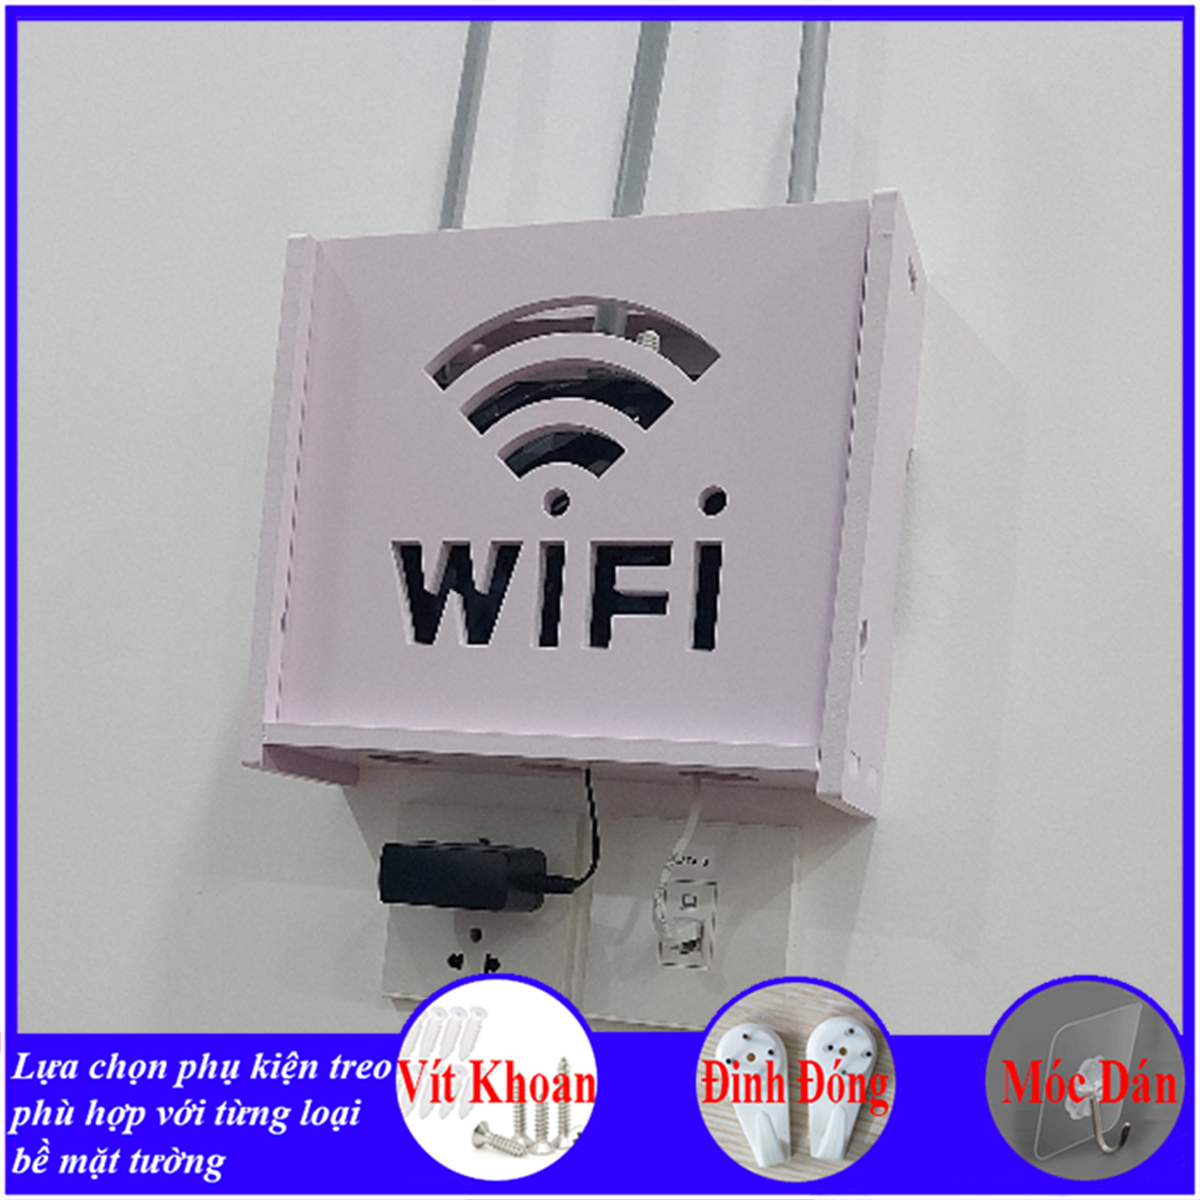 Kệ treo tường, kệ đặt modem wifi, đầu thu kỹ thuật số, remote, điện thoại, chất liệu gỗ Pitech cao cấp màu trắng - B011